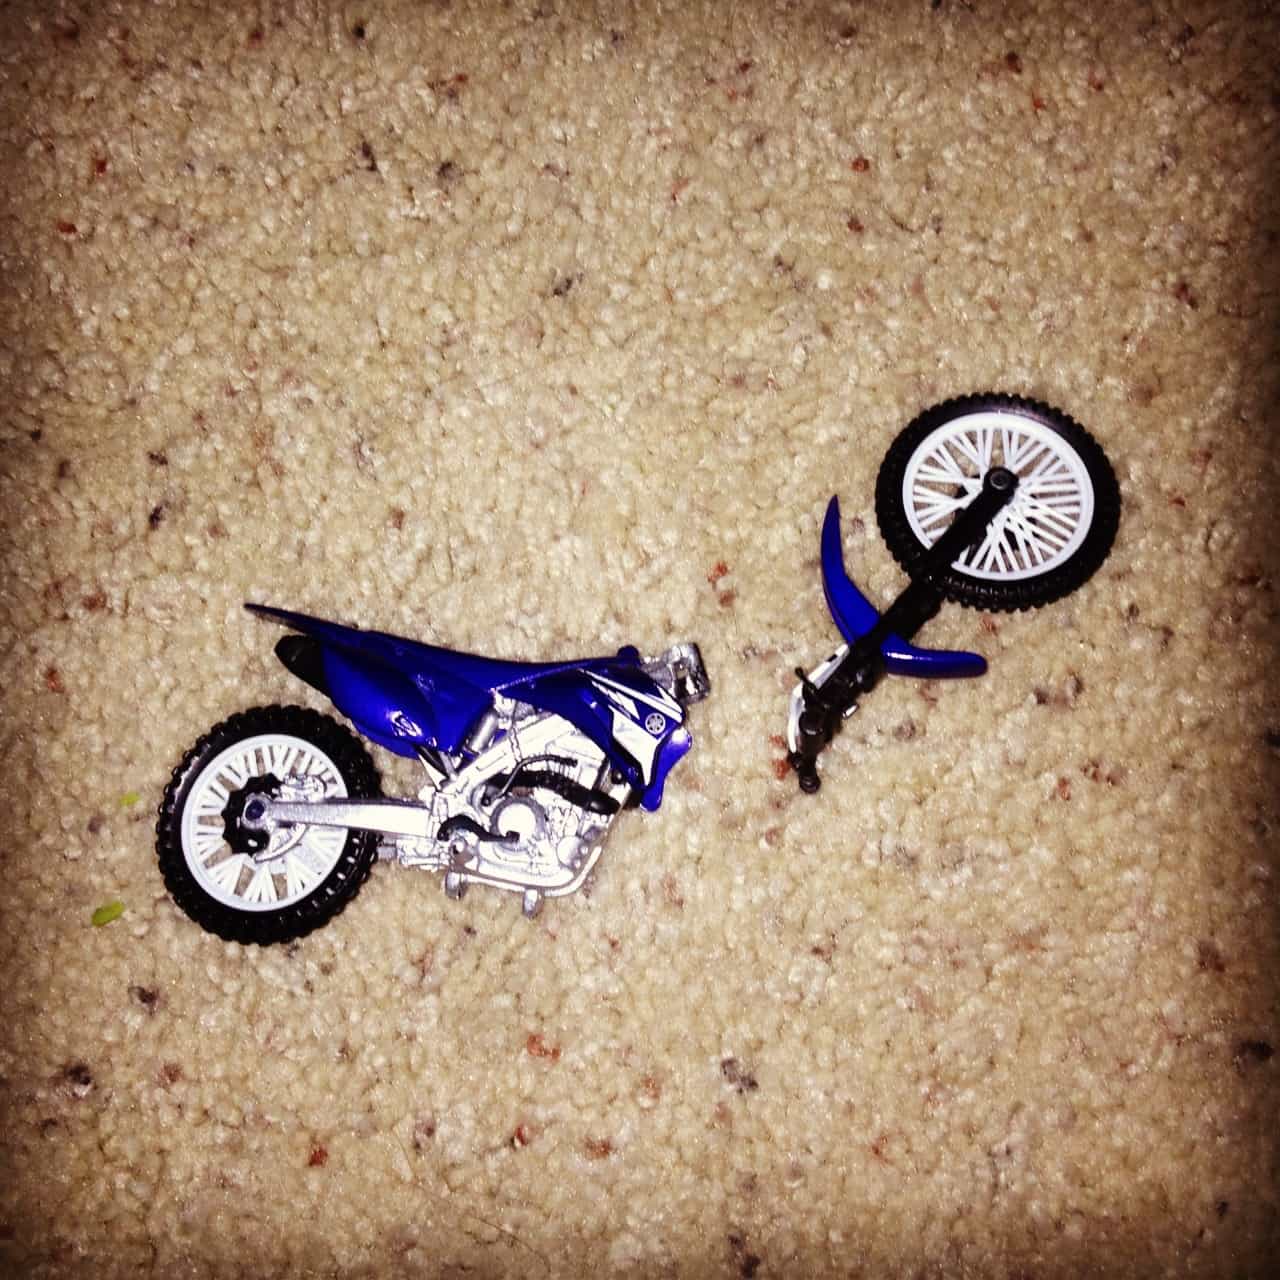 Broke the bike. Broken Bike. I broke my Toy.